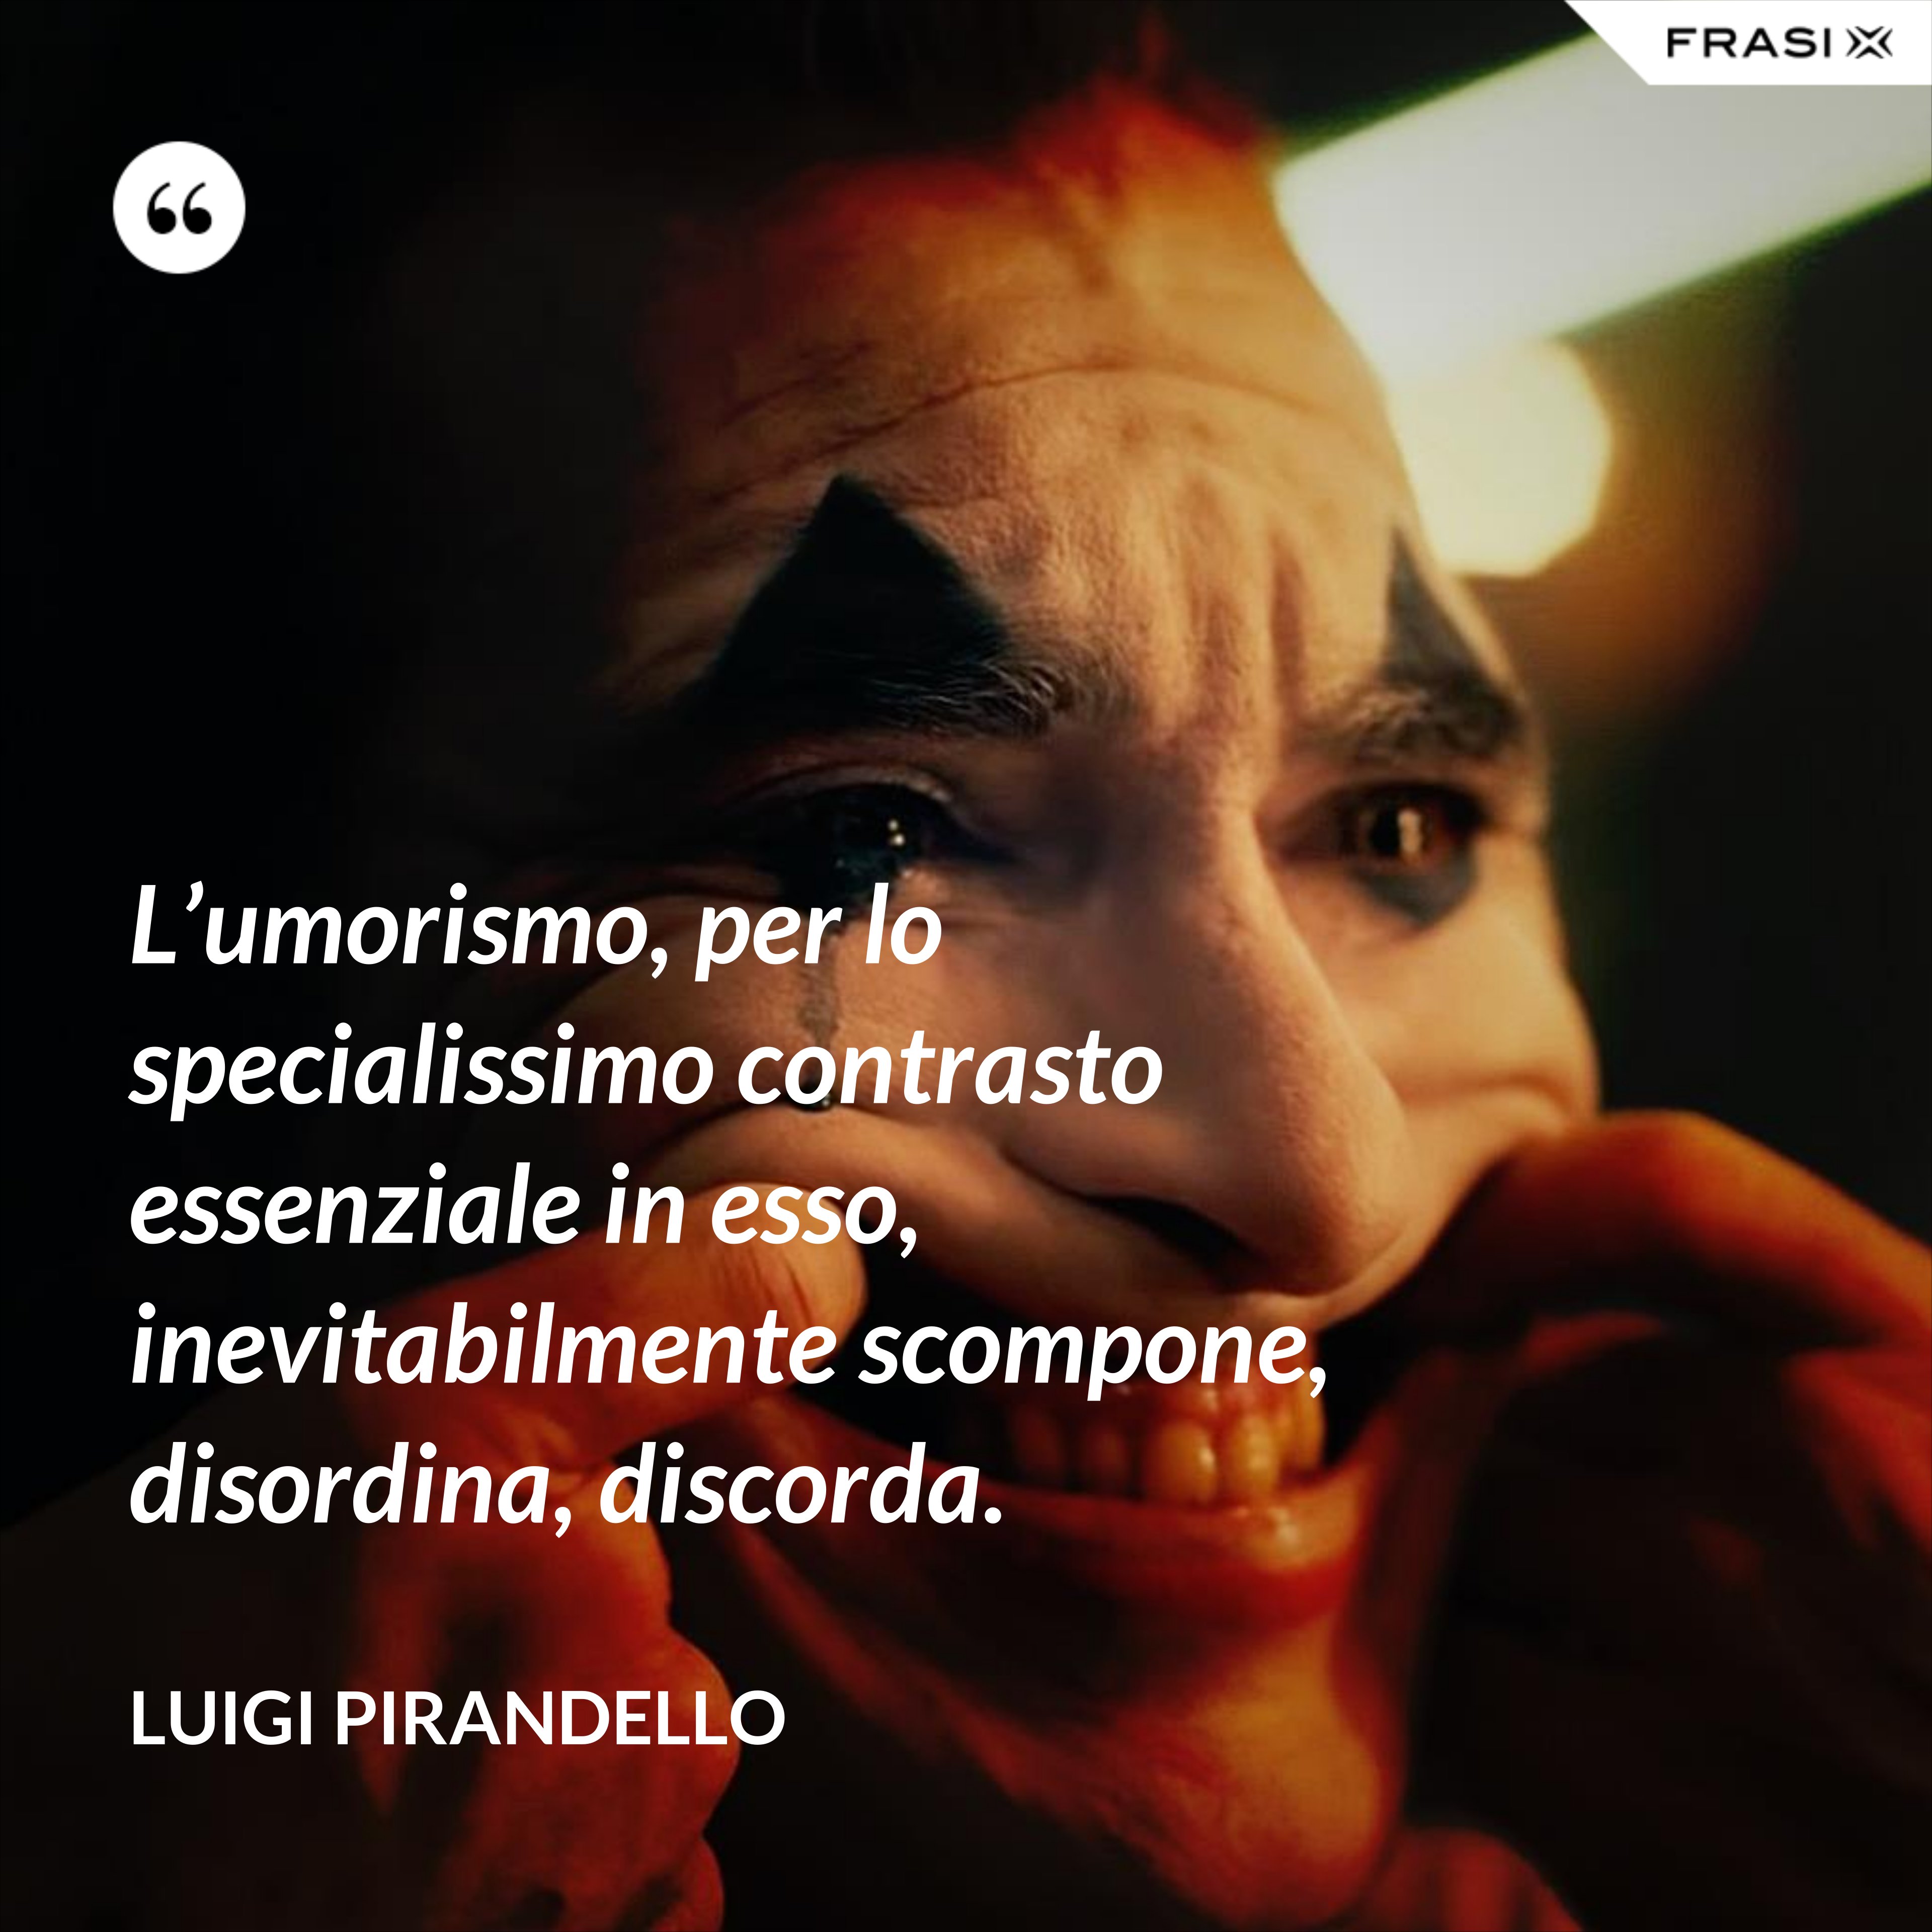 L’umorismo, per lo specialissimo contrasto essenziale in esso, inevitabilmente scompone, disordina, discorda. - Luigi Pirandello